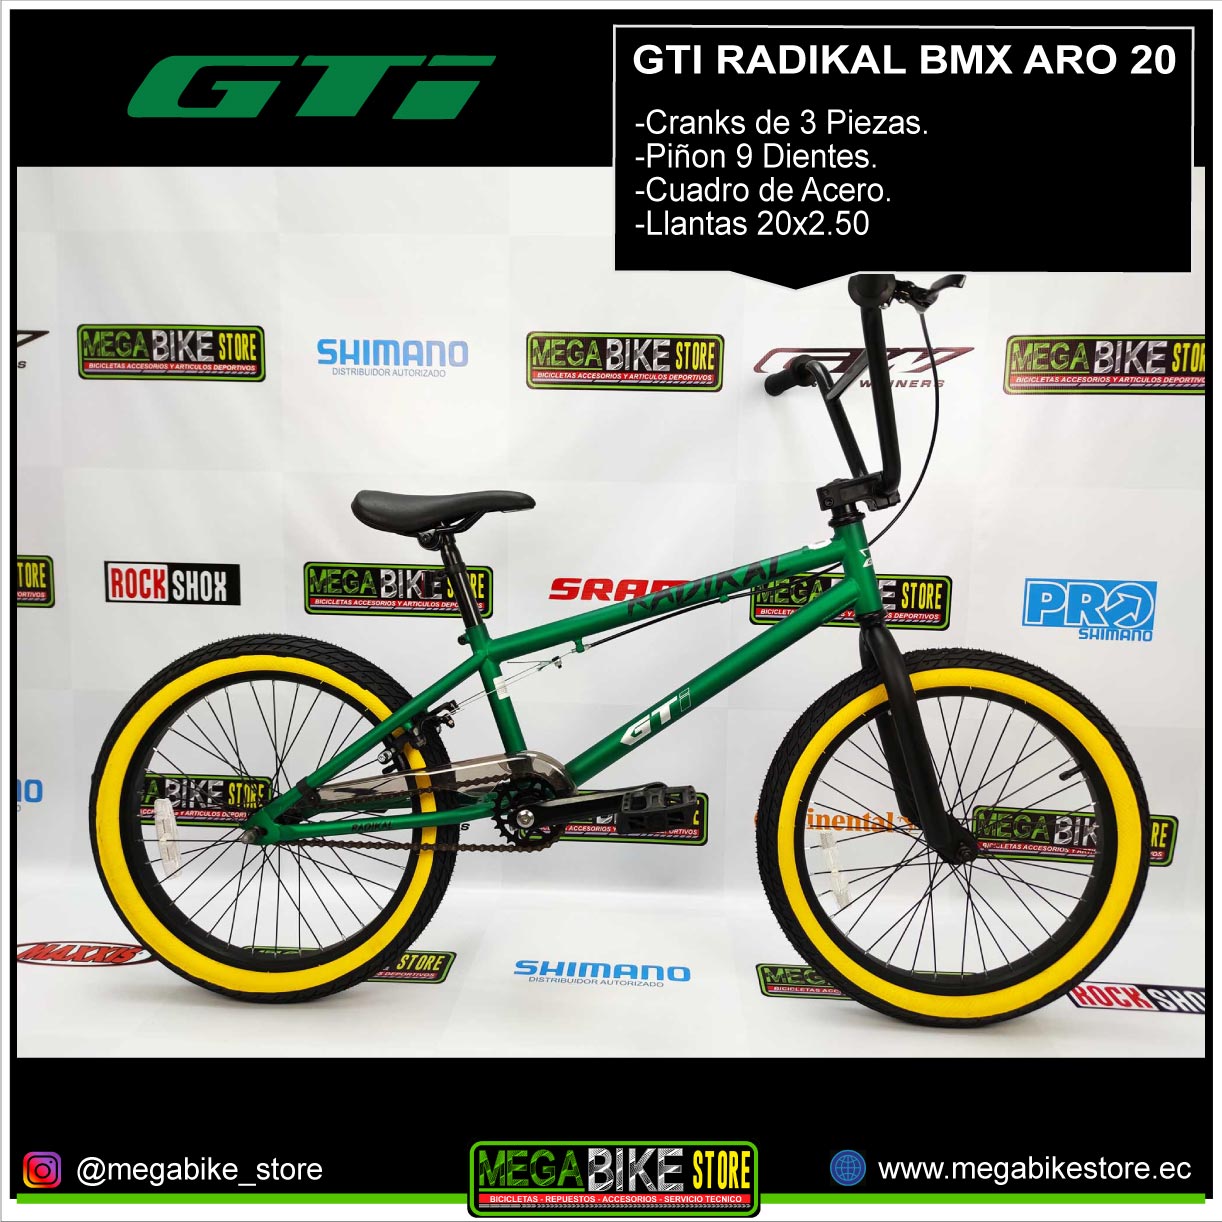 Bicicleta GTI RADIKAL Aro 20 para Freestyle, con cranks 3 piezas, mazas 9 Dientes (Verde) - Store